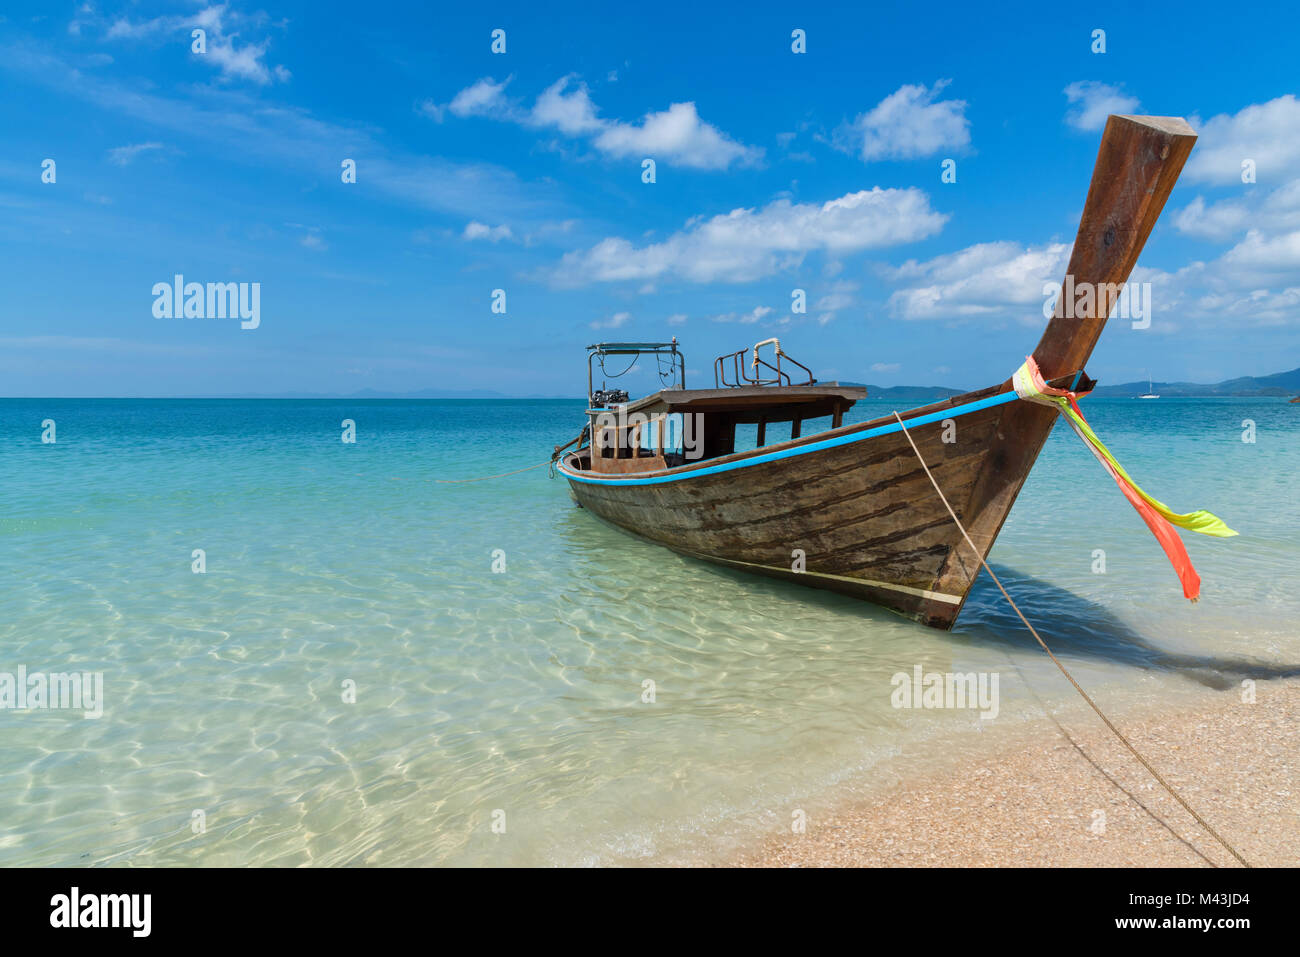 Atemberaubende Landschaft geschossen von einem Paradies Ziel - einsamer Longtail Boot am Ufer von einem Sandstrand in Thailand mit klaren, blauen Wasser des Ozeans Stockfoto